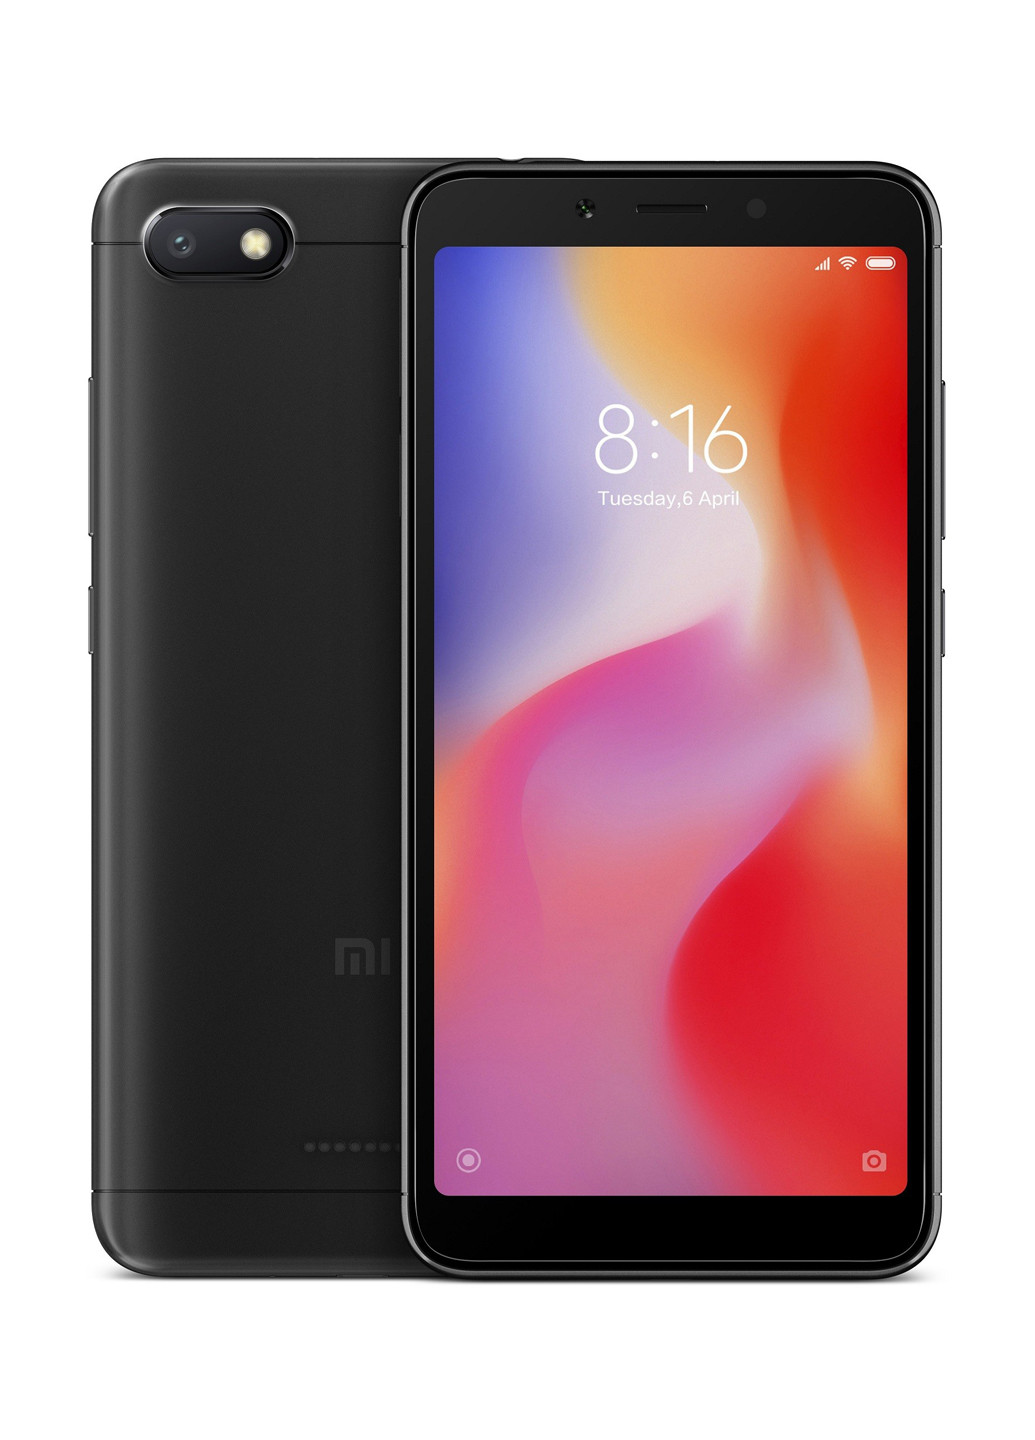 Смартфон Redmi 6A 2 / 16GB Black Xiaomi redmi 6a 2/16gb black (130569676)